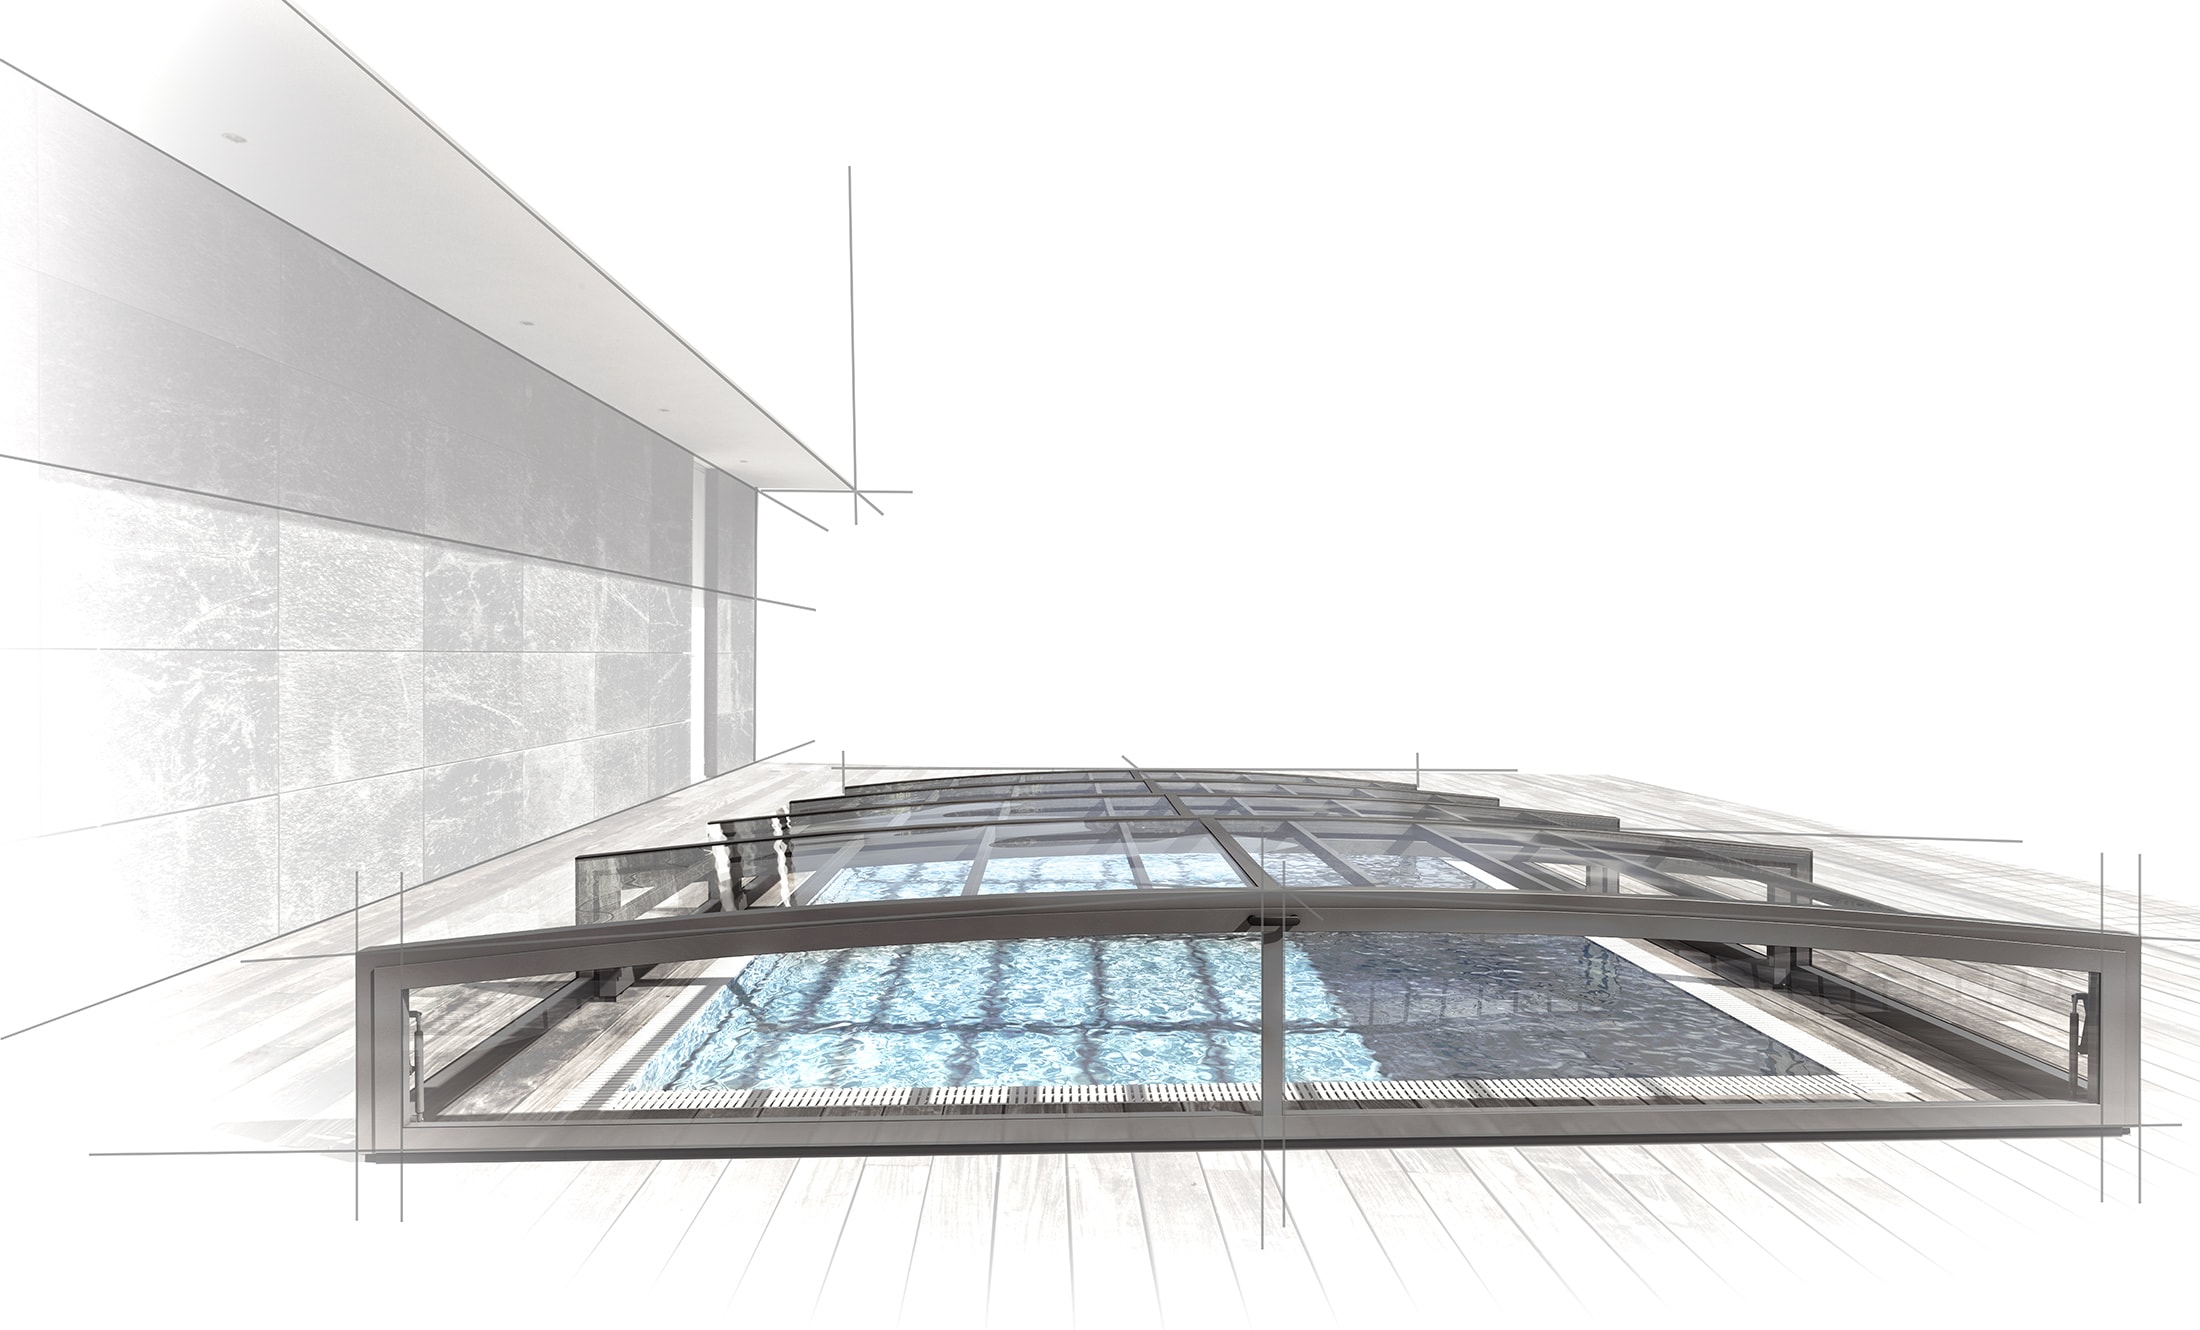 POPP designová řešení zastřešení bazénů